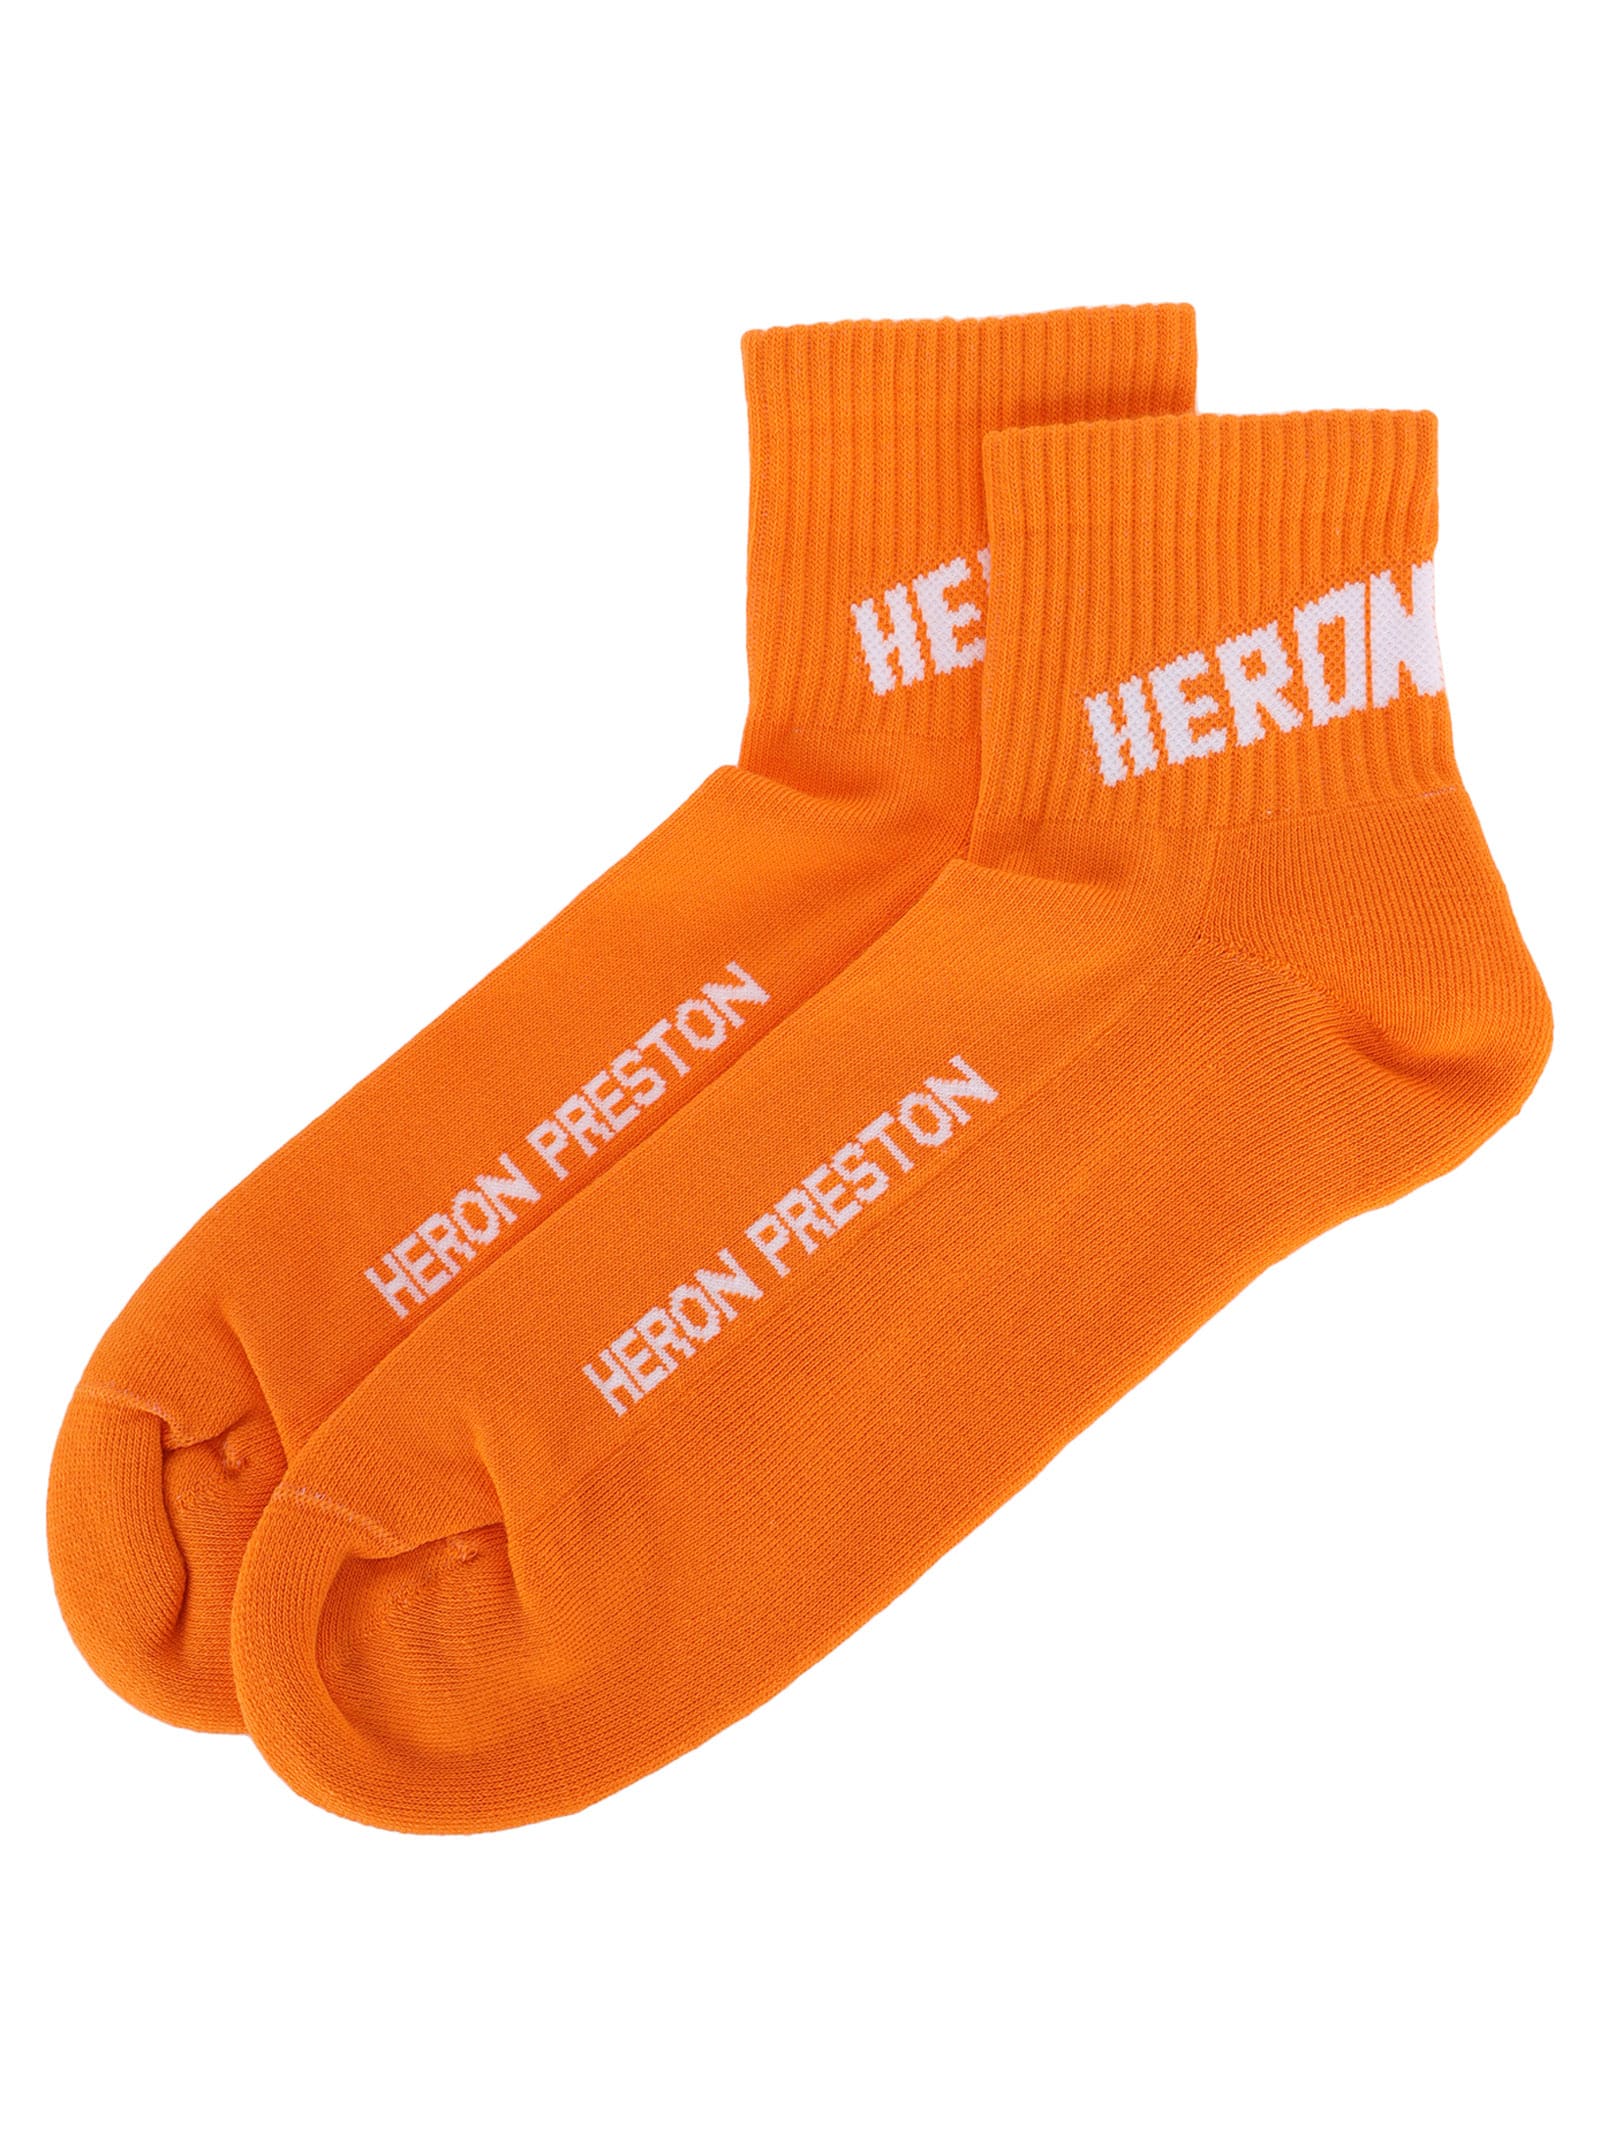 Heron Preston Logo Short Socks In Orange - White